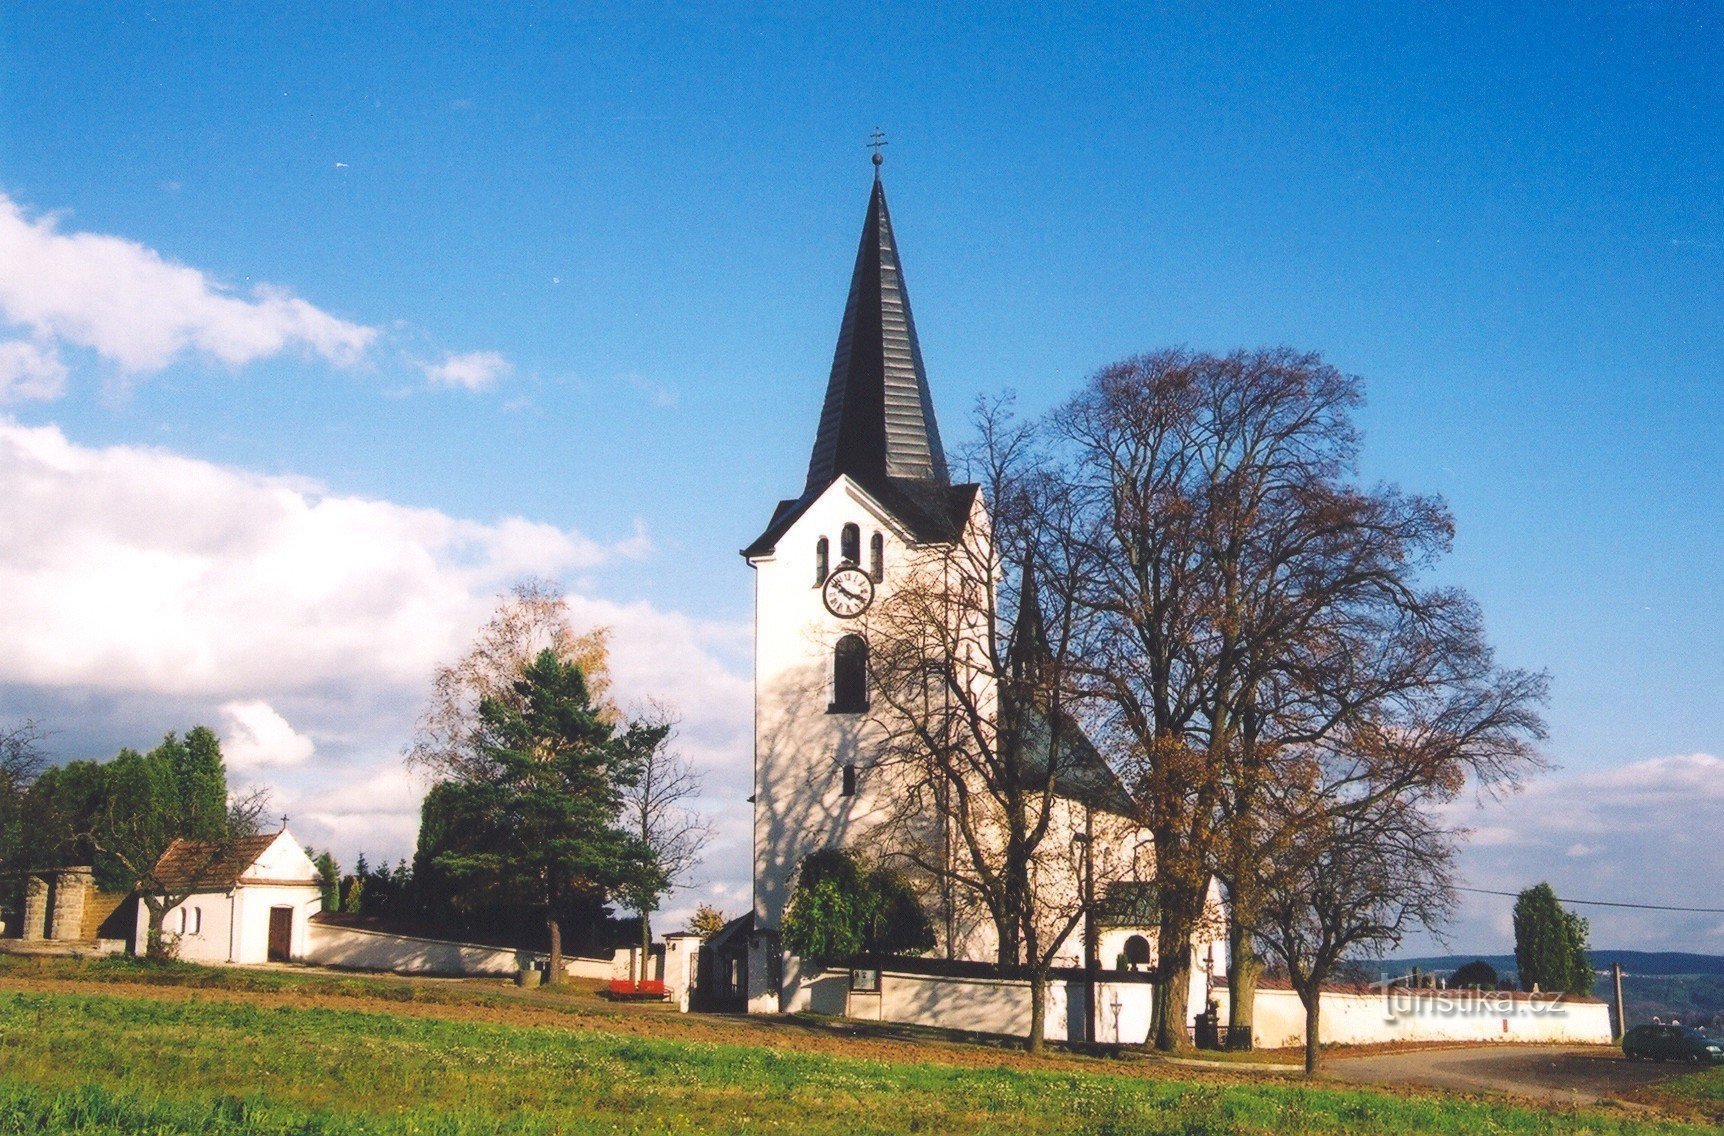 Drnovice - Den heliga treenighetens kyrka